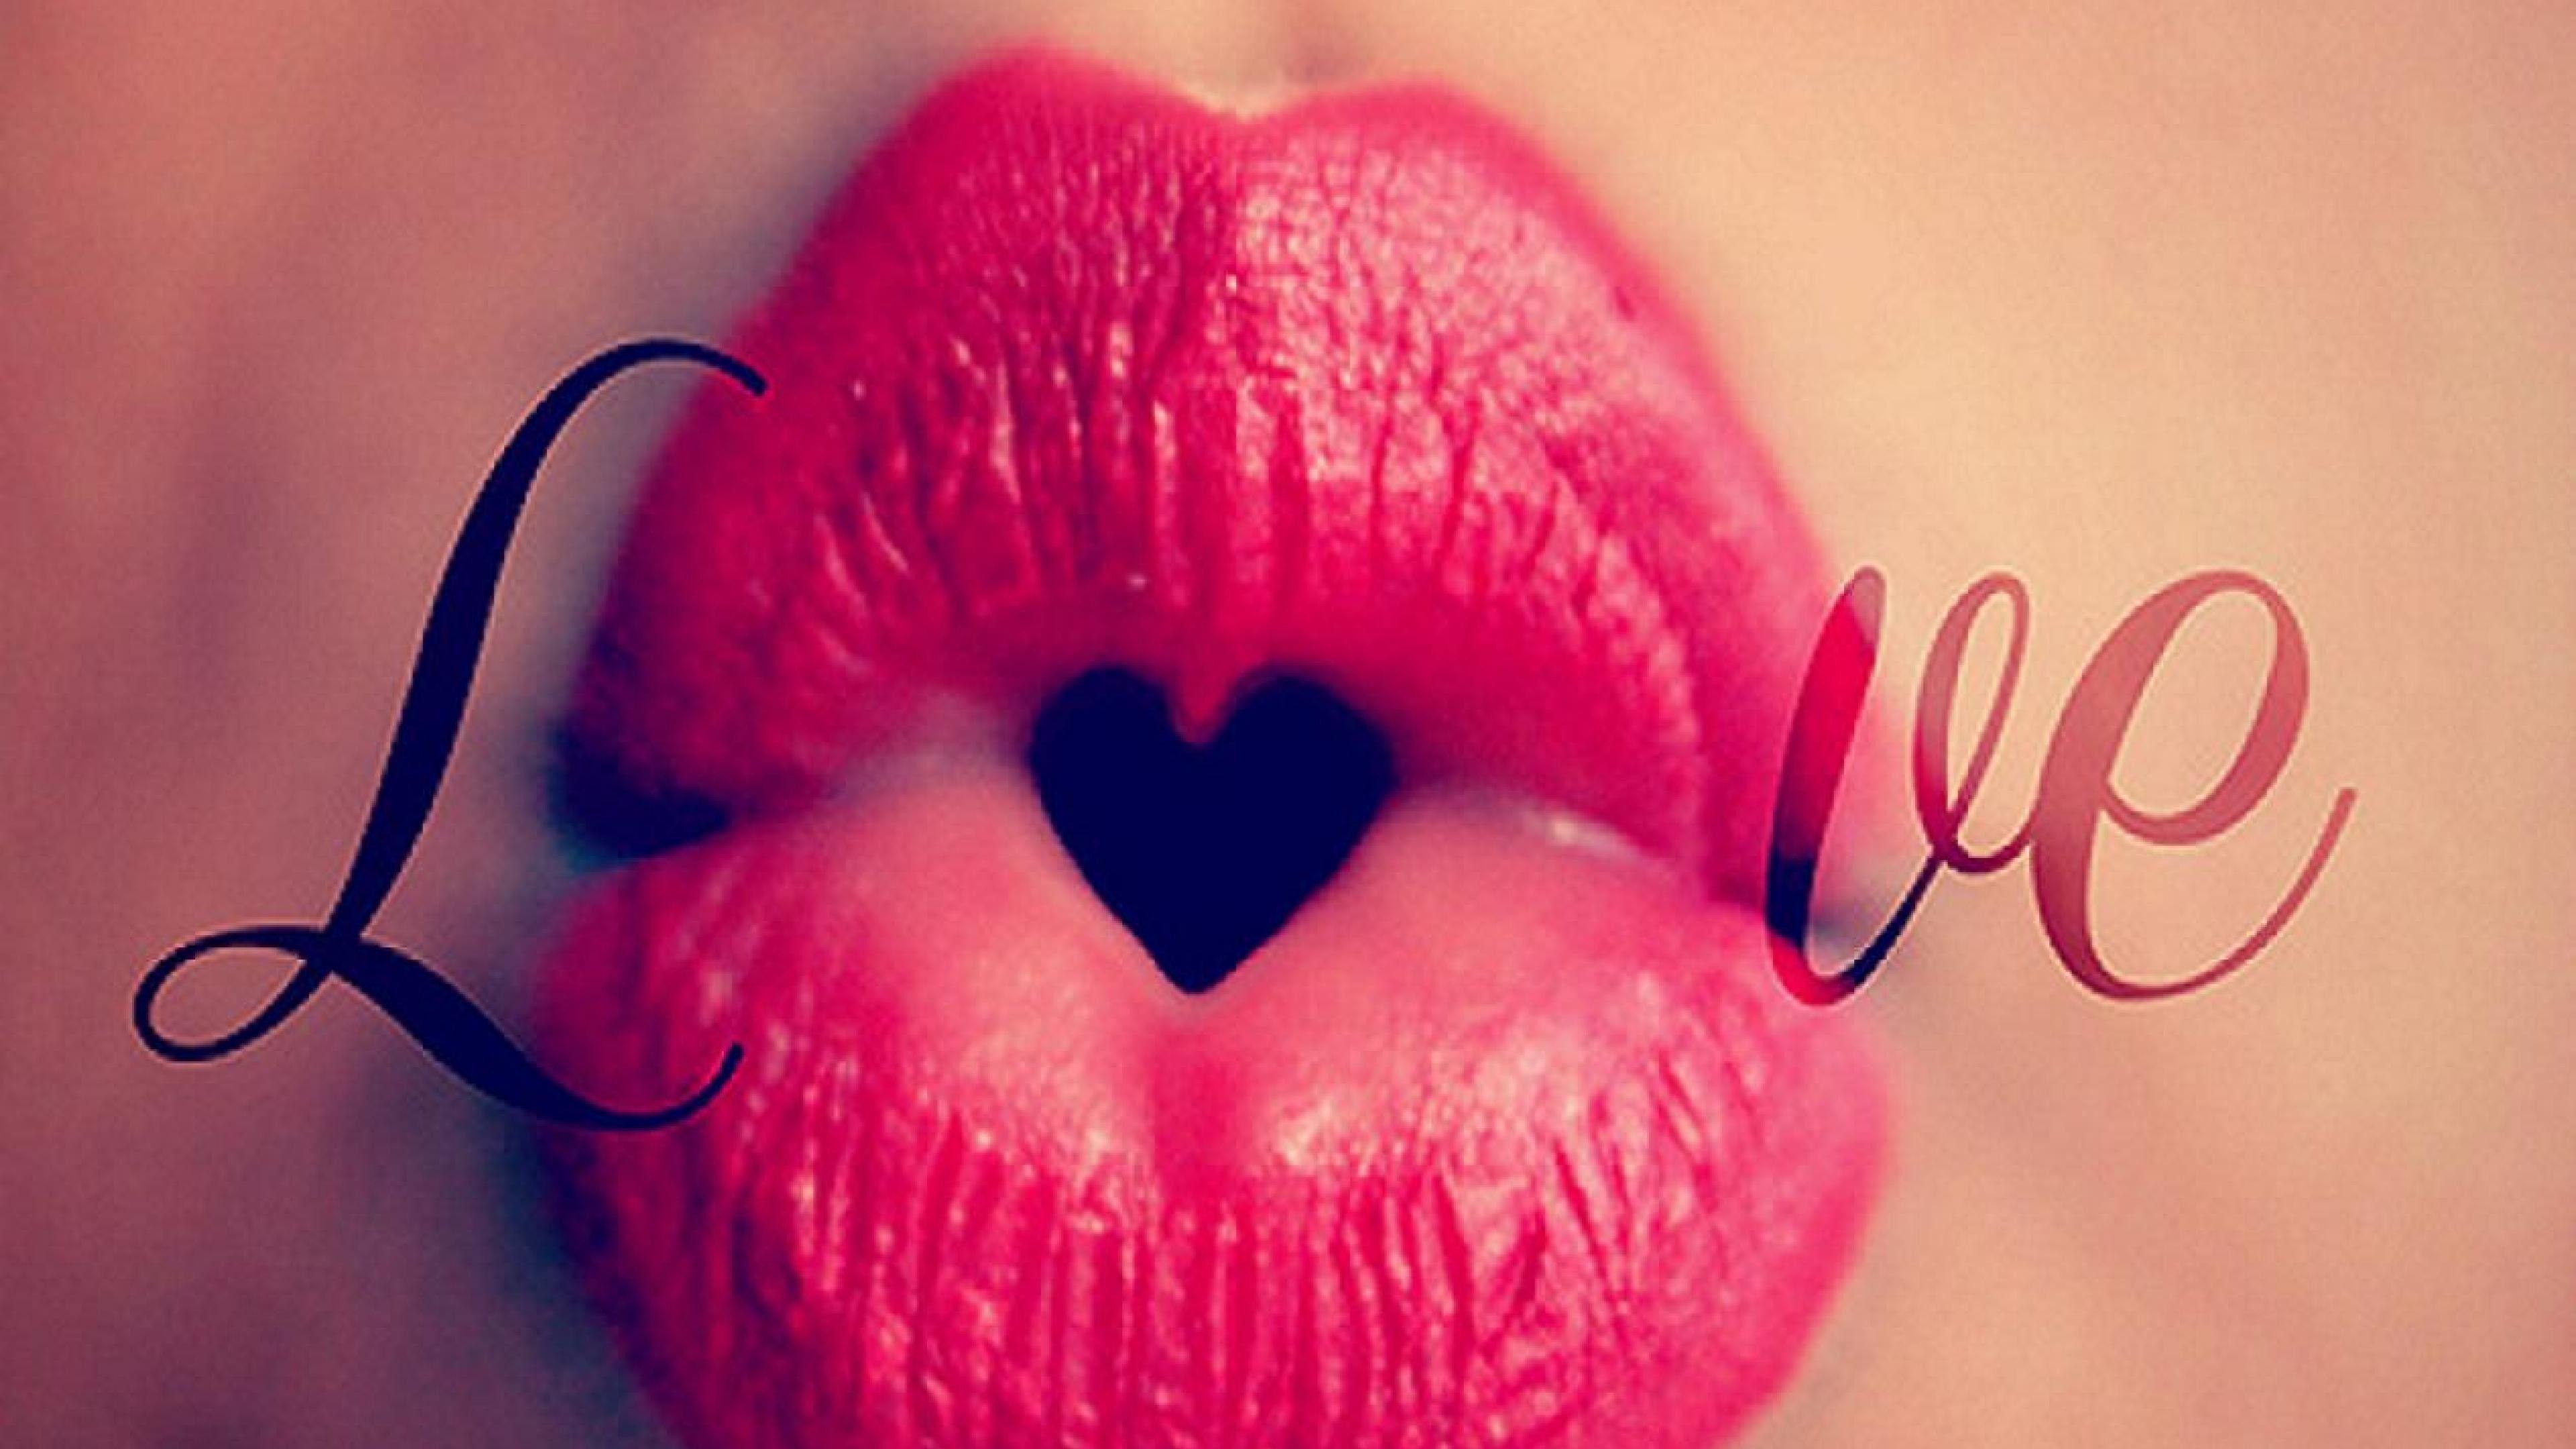 Love U Wallpaper With Kiss